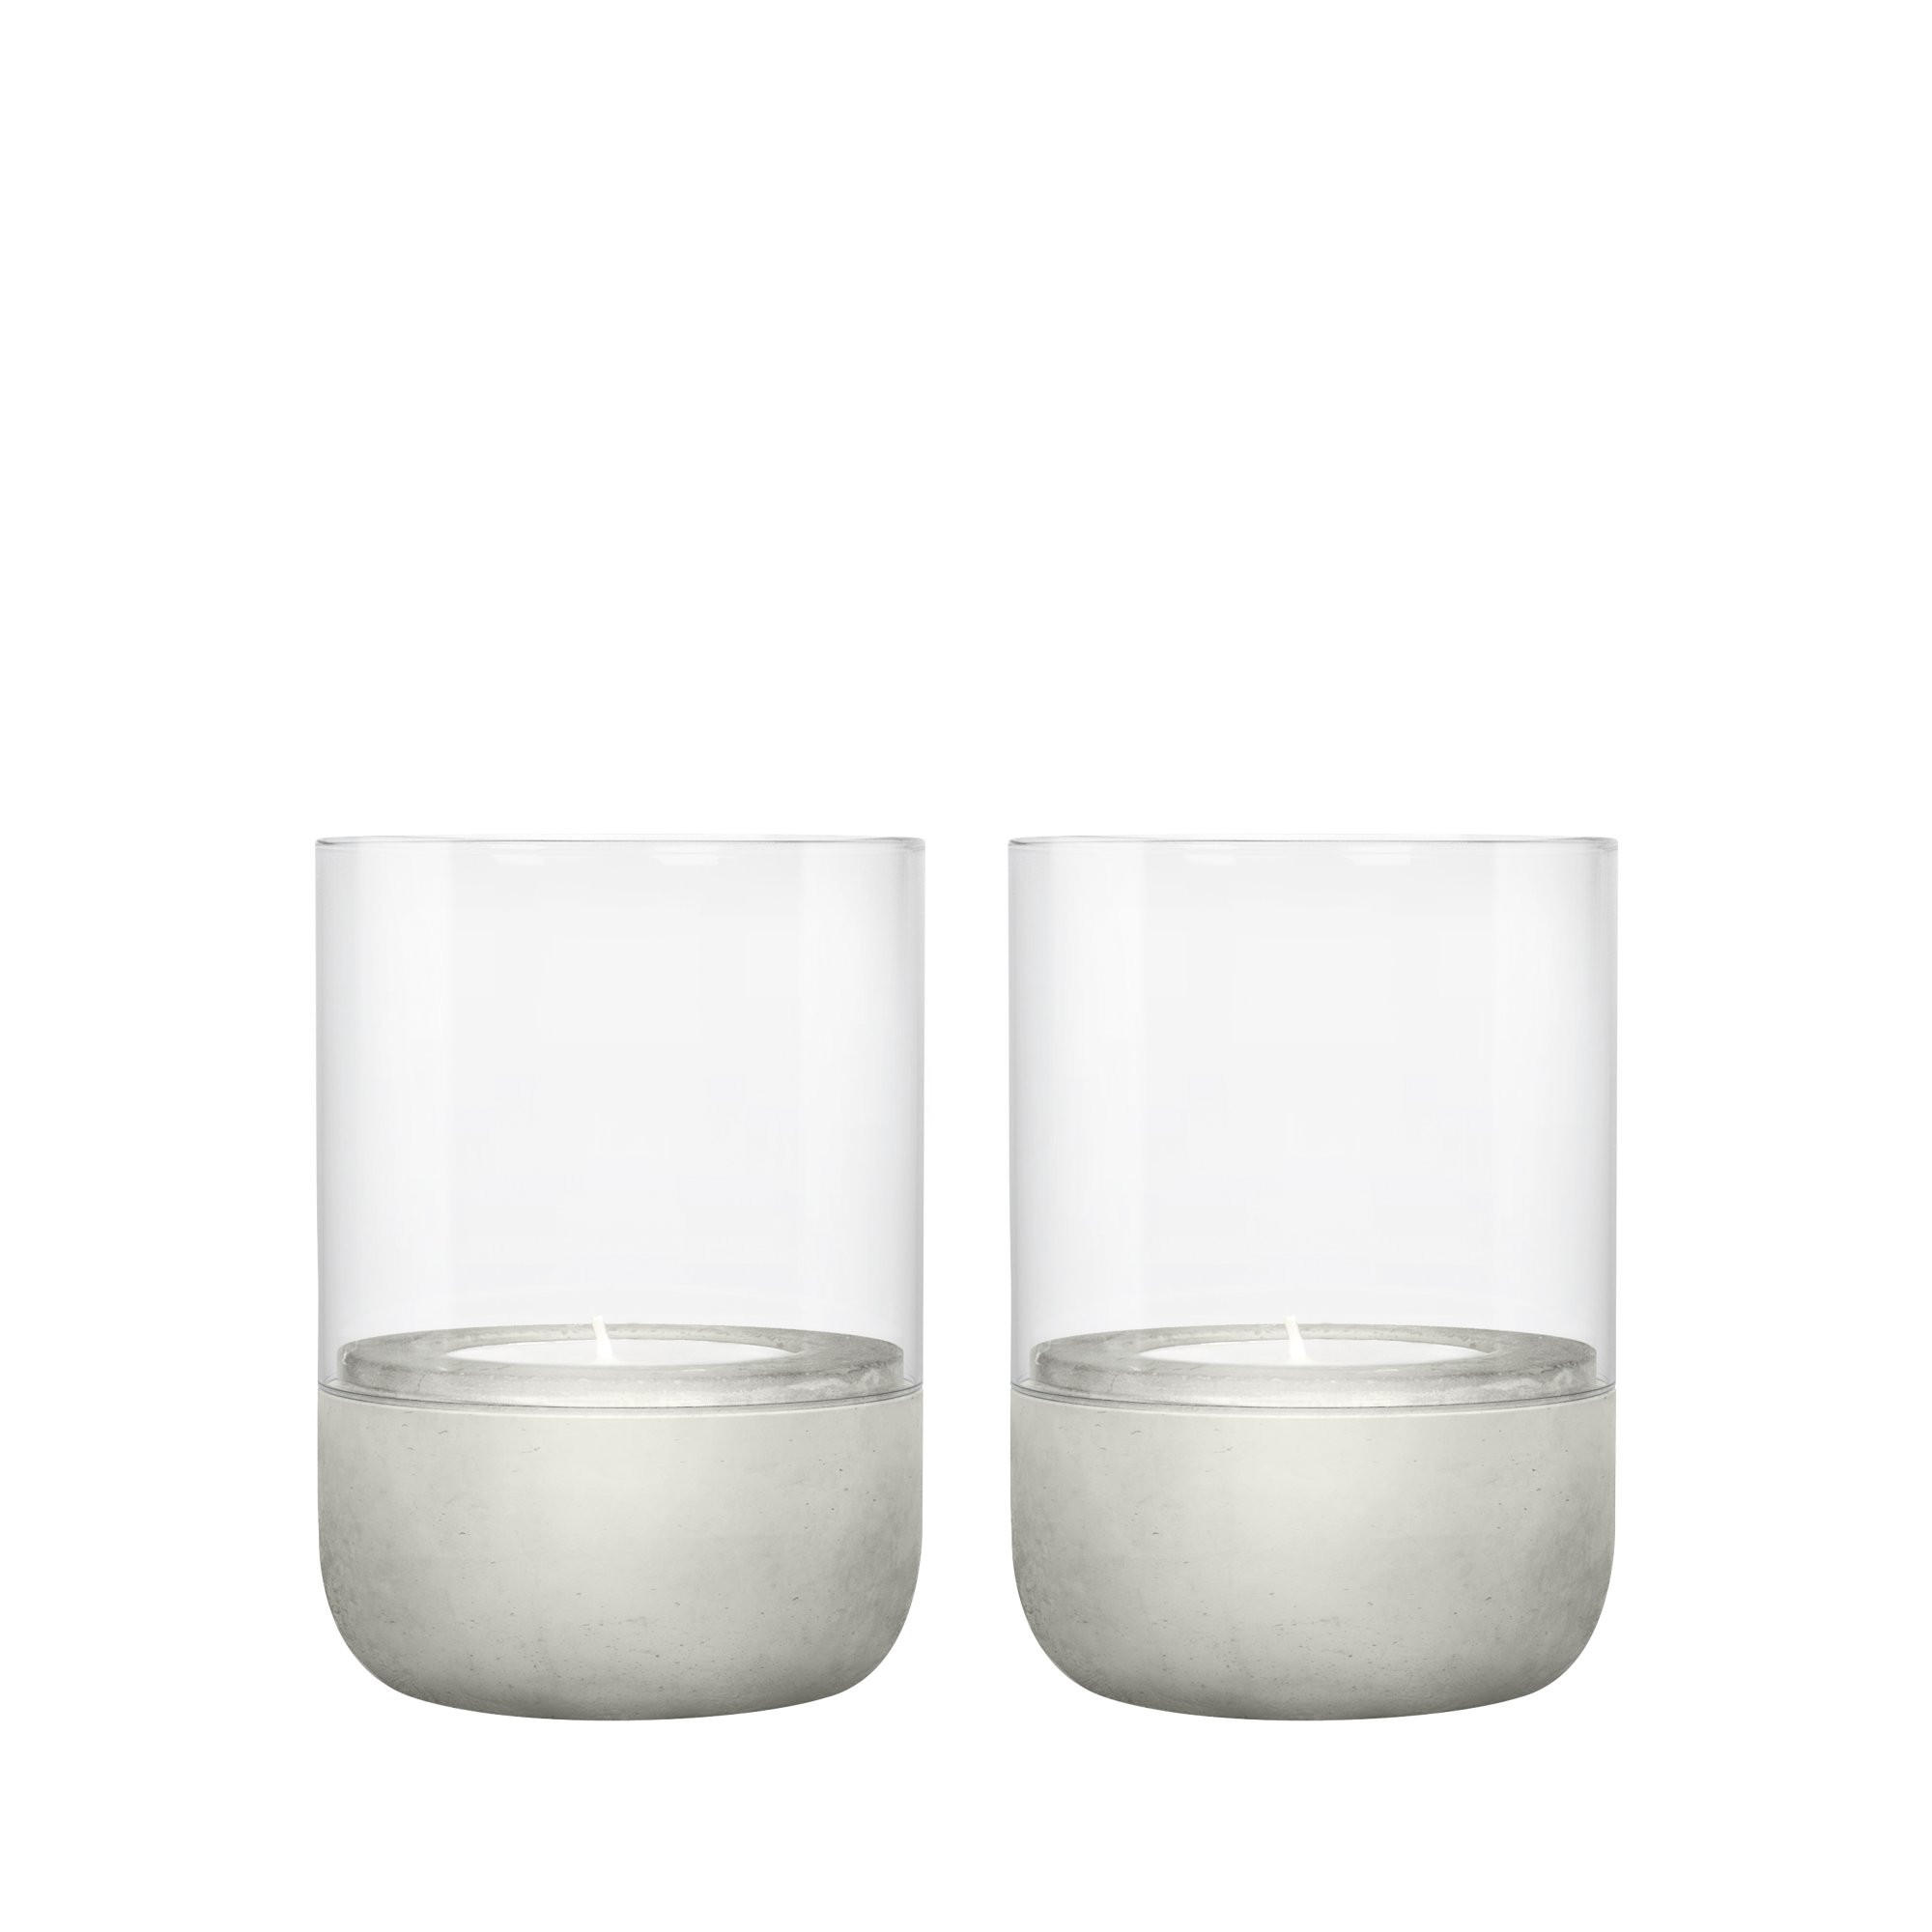 WINDLICHTSET 2  - Klar/Grau, Design, Glas/Stein (7,2/9,5cm) - Blomus